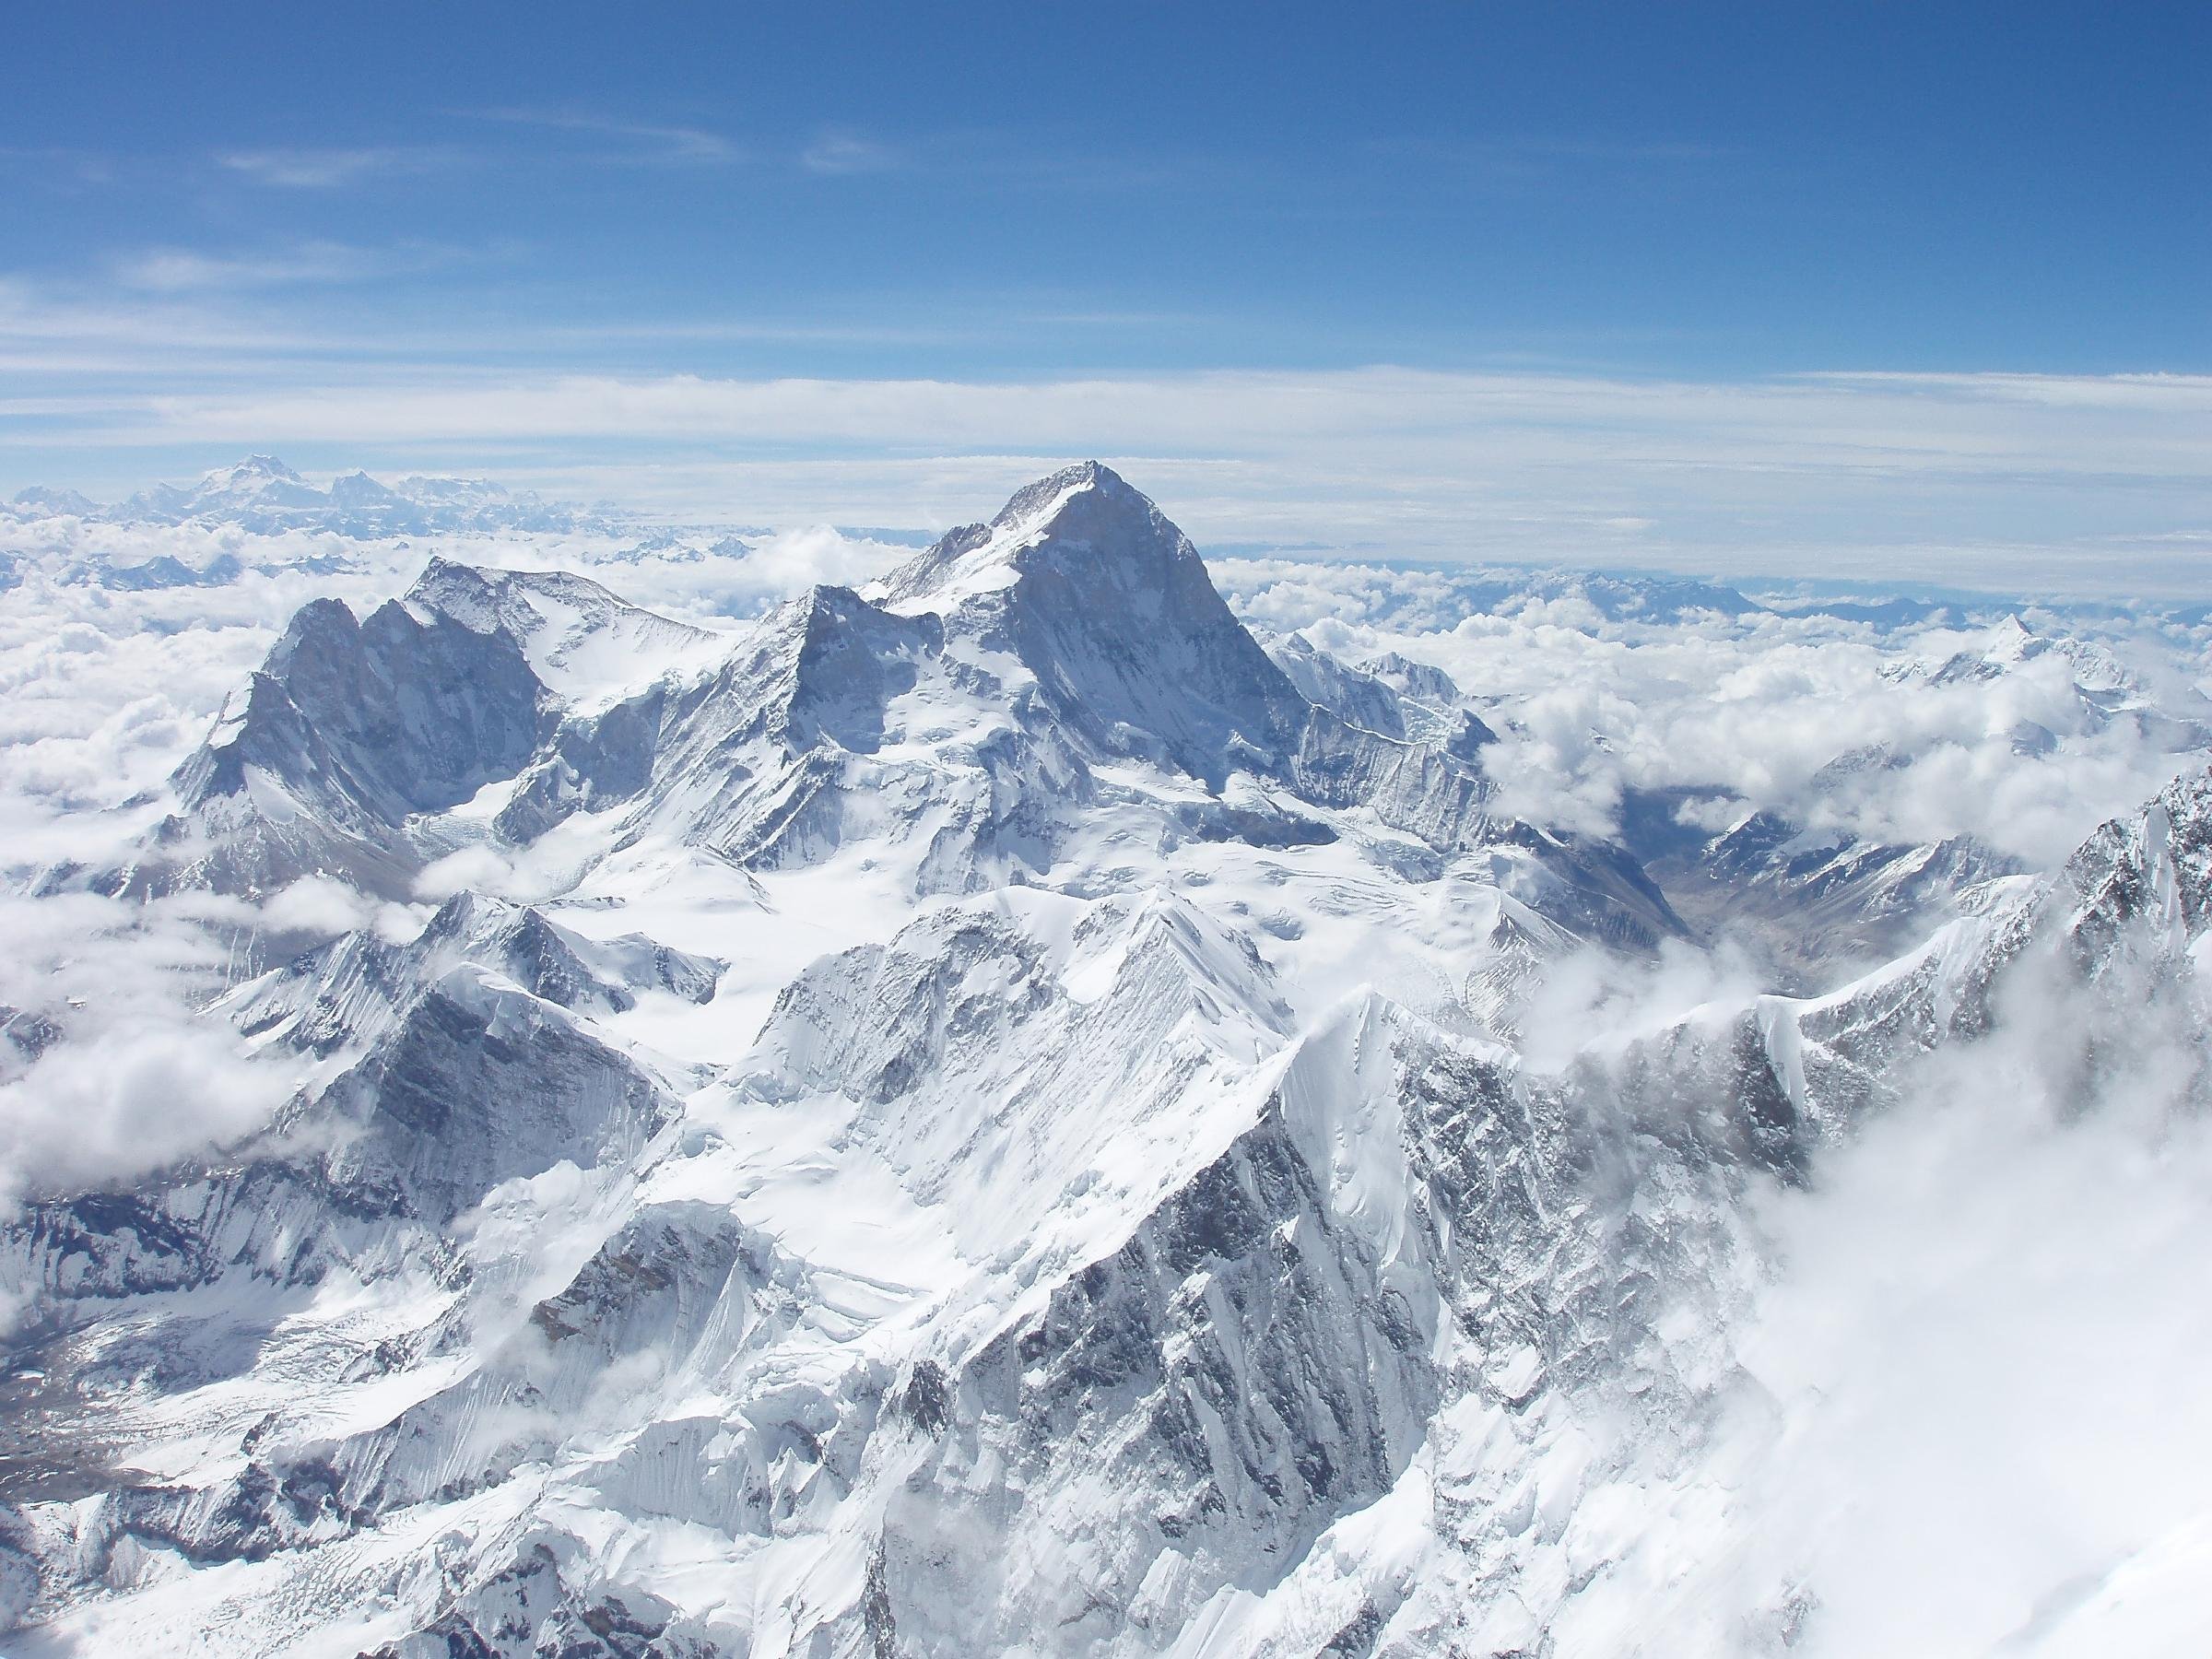 Гималаи море. Гималаи Эверест Джомолунгма. Гора Эверест (Джомолунгма). Гималаи. Тибет Гималаи, Джомолунгма, Эверест))). Гималаи и Эверест высота.